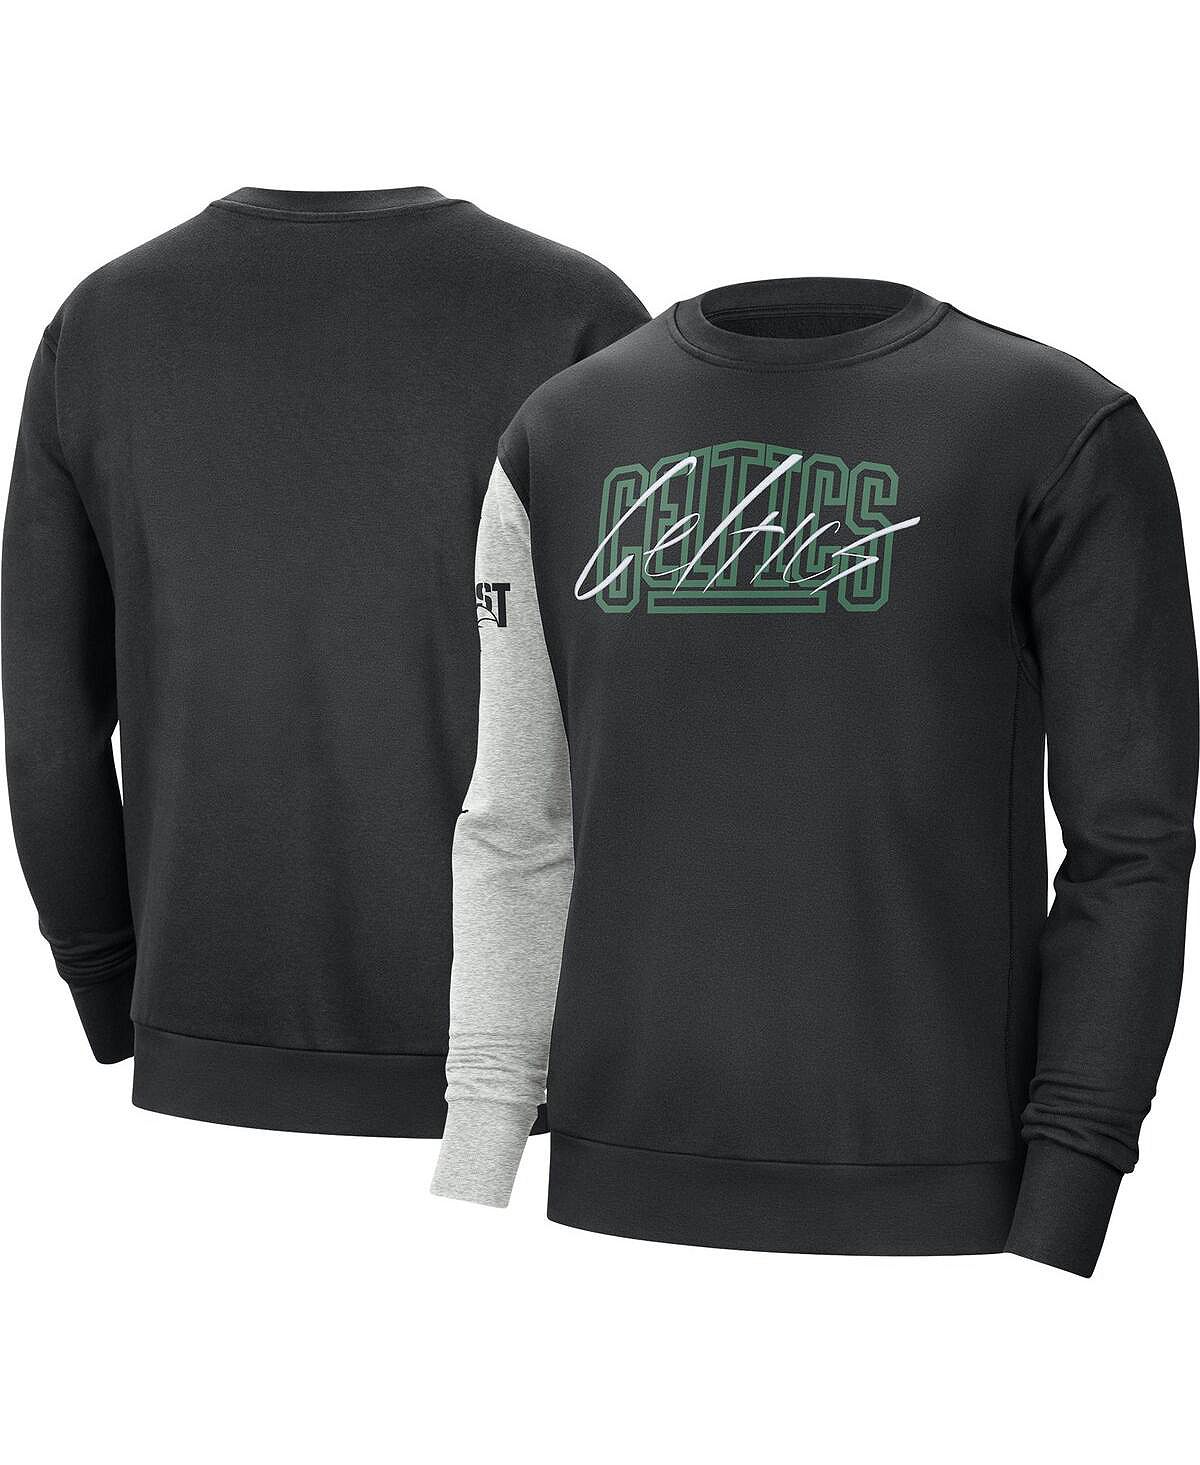 Мужской черный, серо-хизеровый пуловер Boston Celtics Courtside Versus Force & Flight Nike